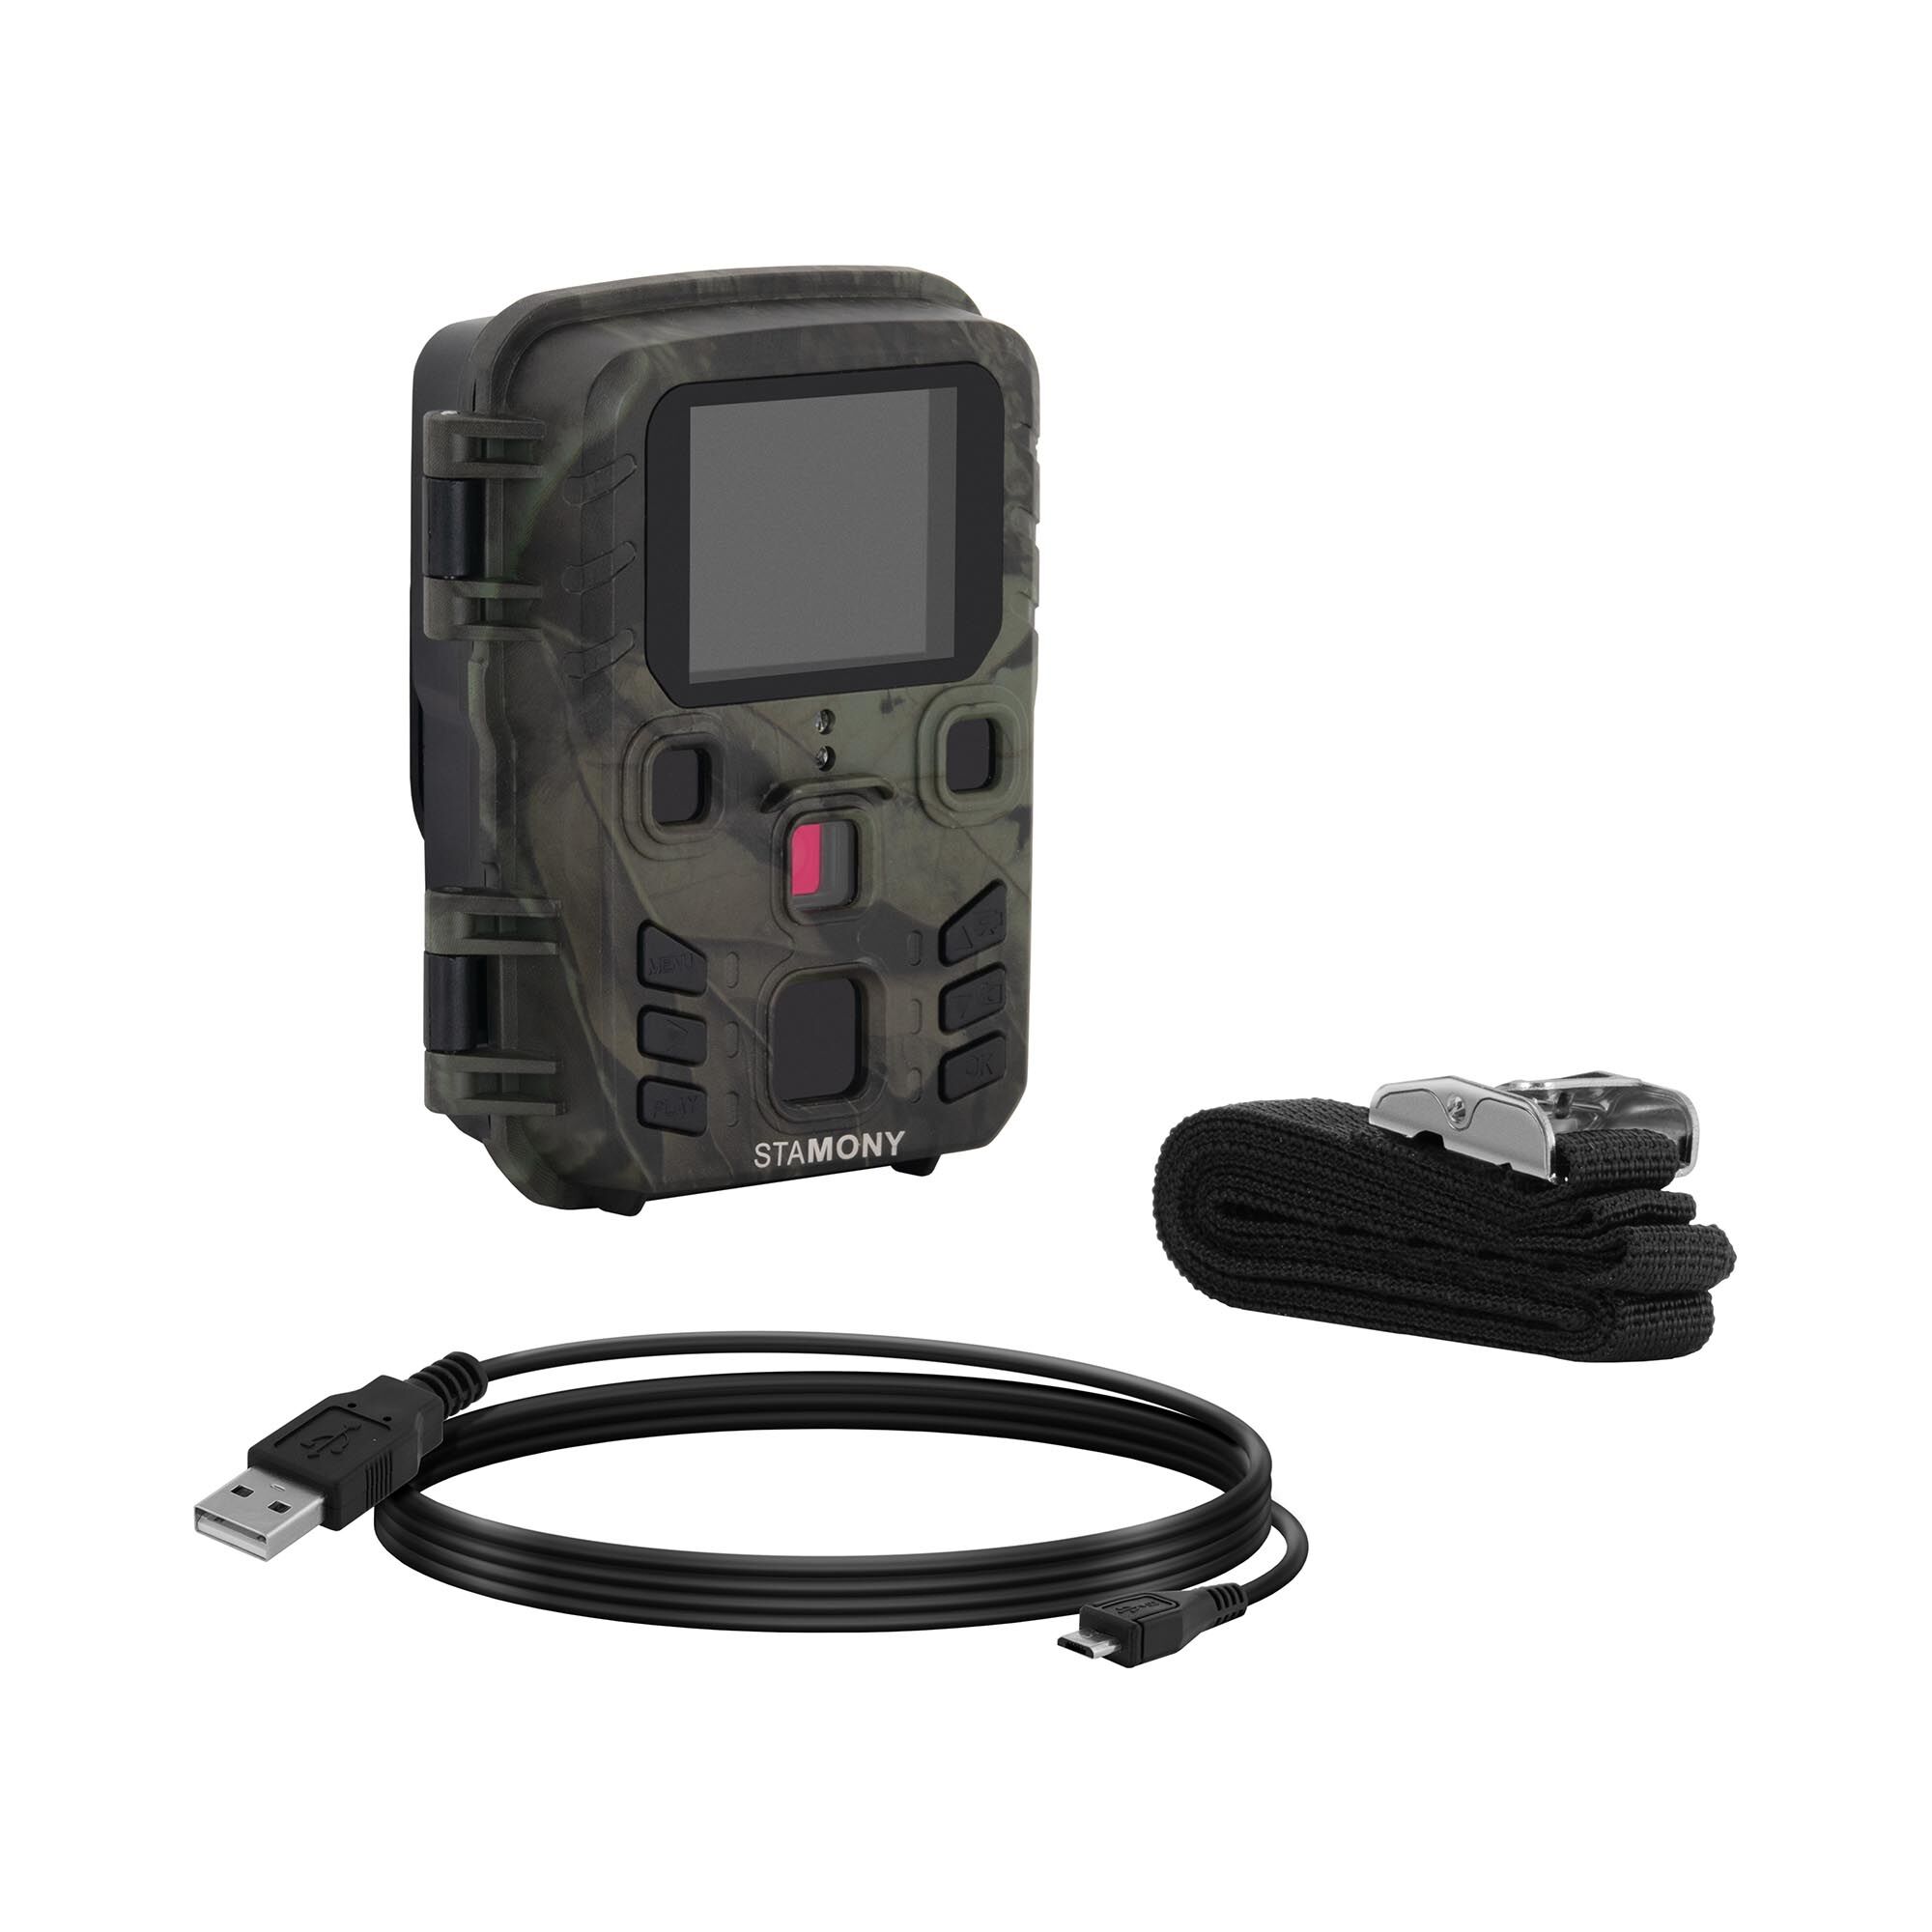 Notice d'utilisation, manuel d'utilisation et mode d'emploi Stamony Mini caméra de chasse - 5 Mpx - HD intégrale - 20 m - 1,1 s ST-HC-2000M   